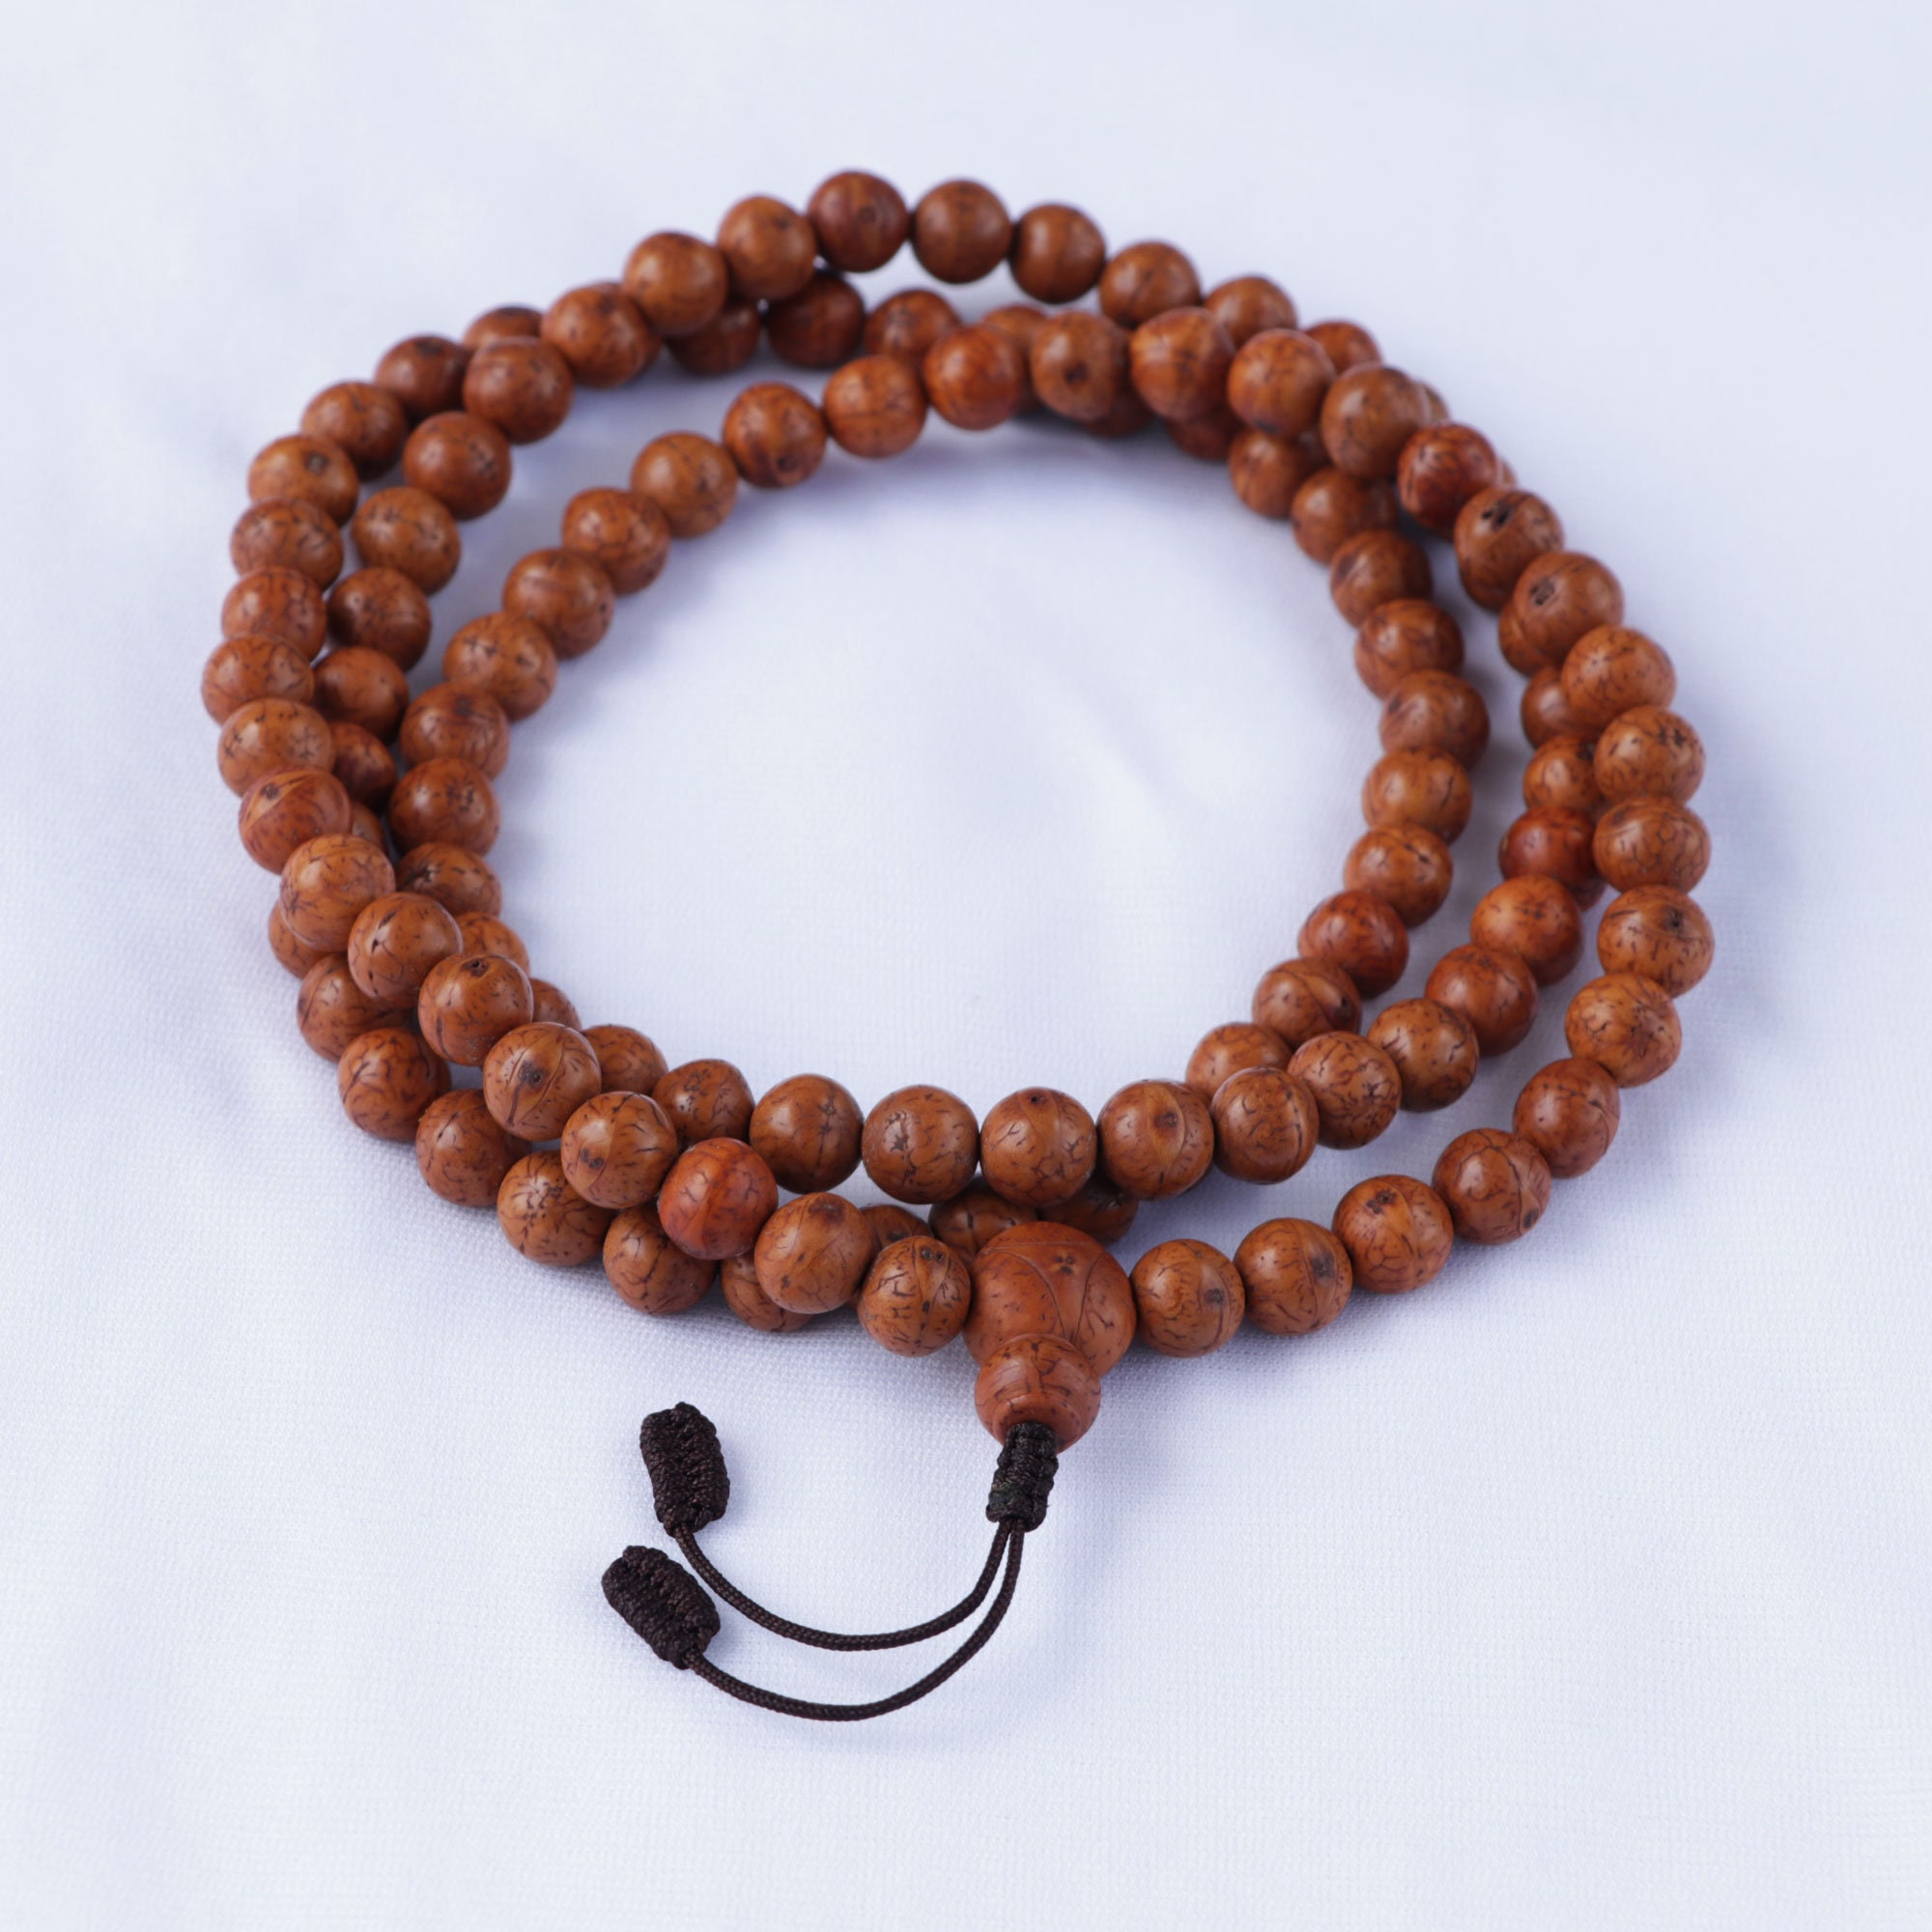 14 Beads Phoenix Eye Bodhi Seed Genuine Indonesian Buddha Chitta